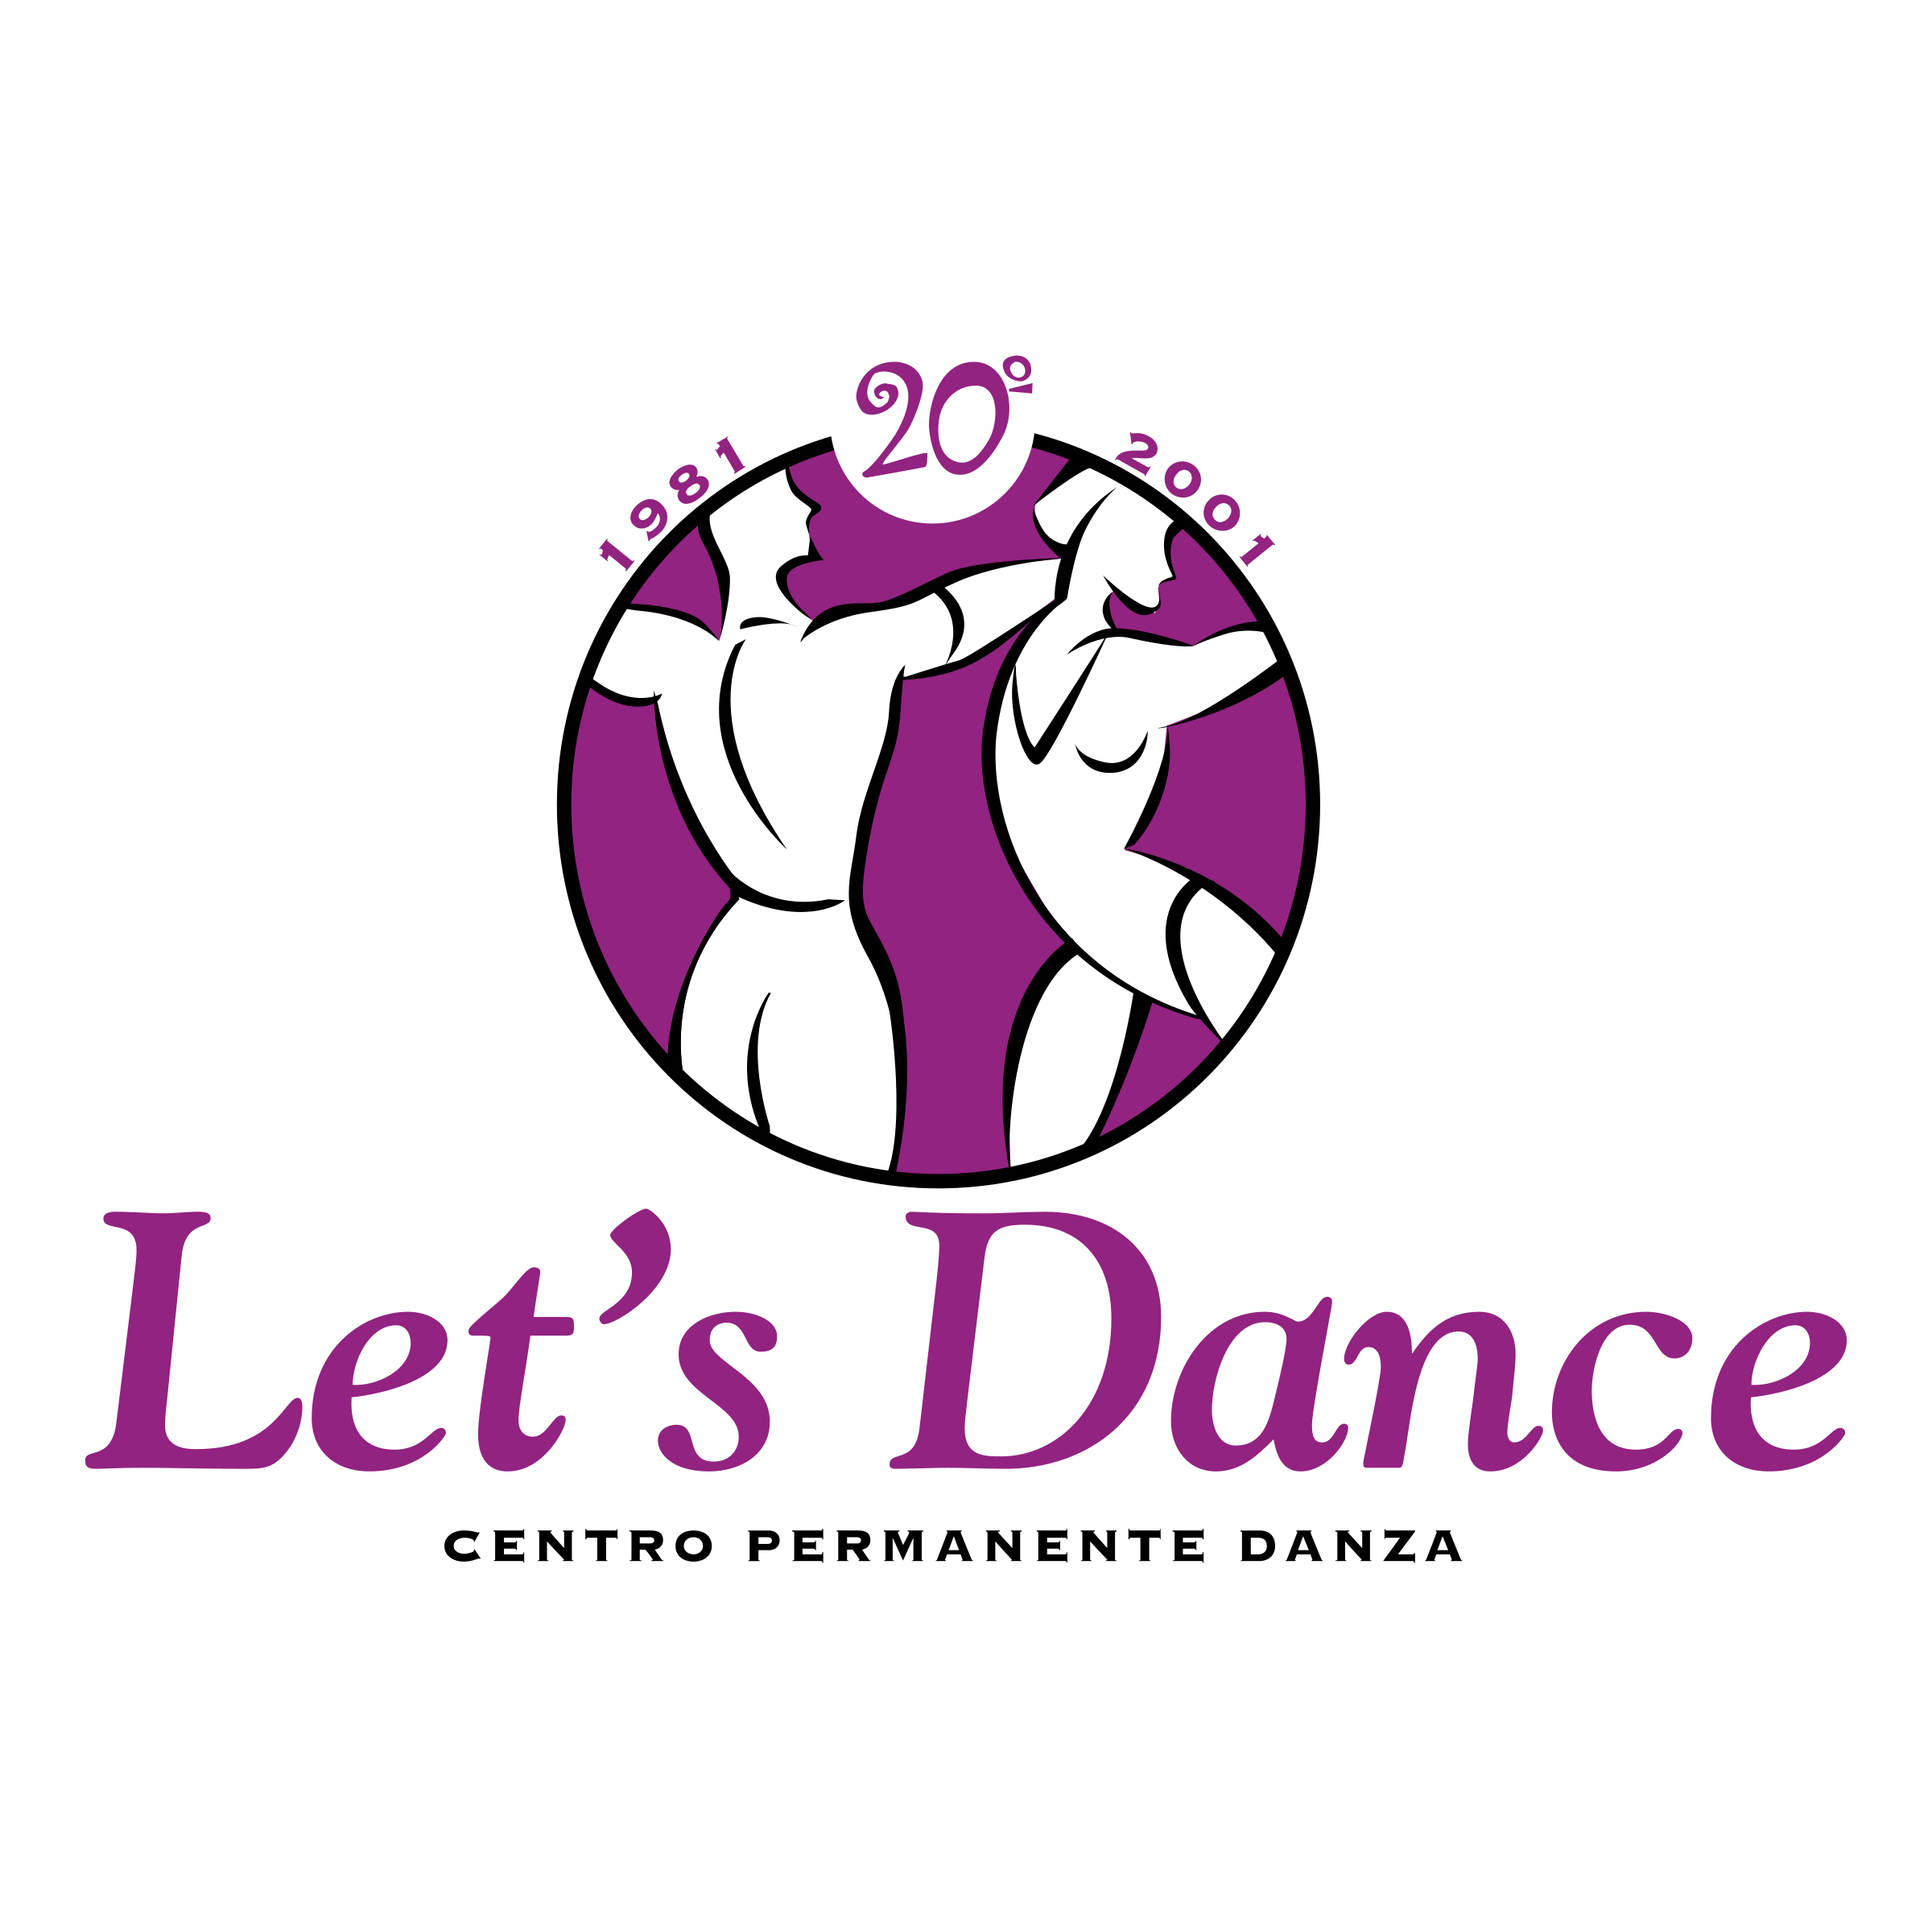 Let's Dance Logo - Let's Dance Logo PNG Transparent & SVG Vector - Freebie Supply